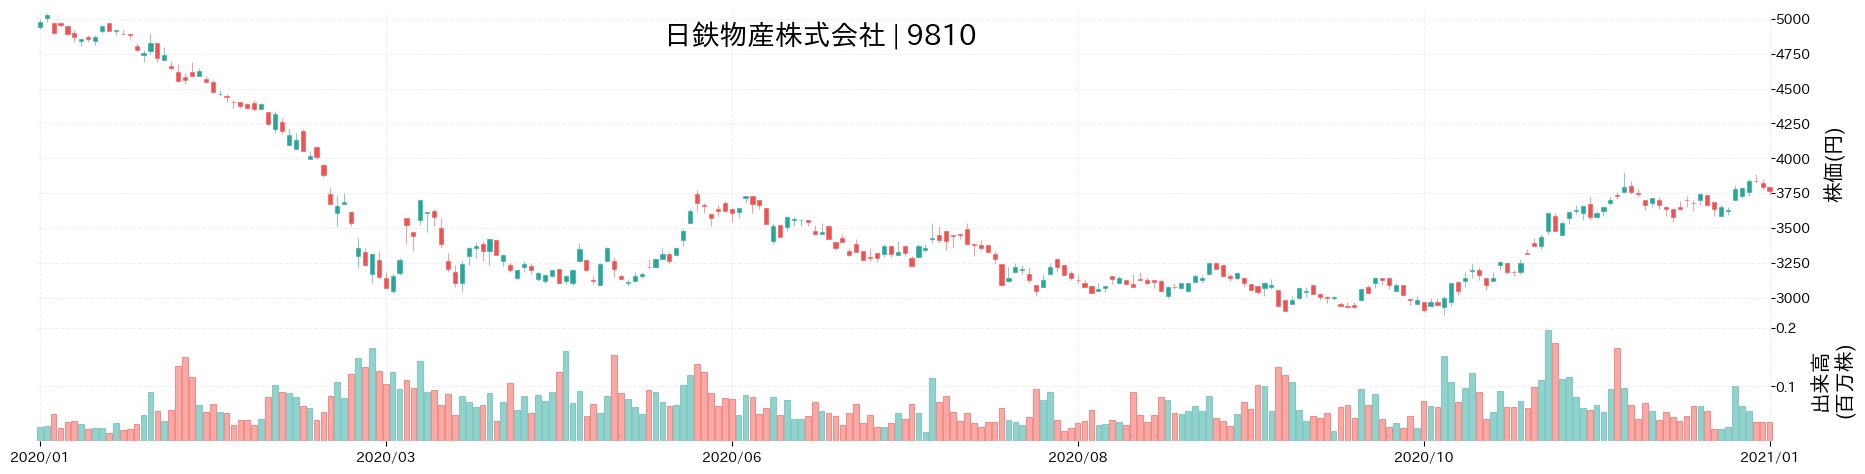 日鉄物産の株価推移(2020)